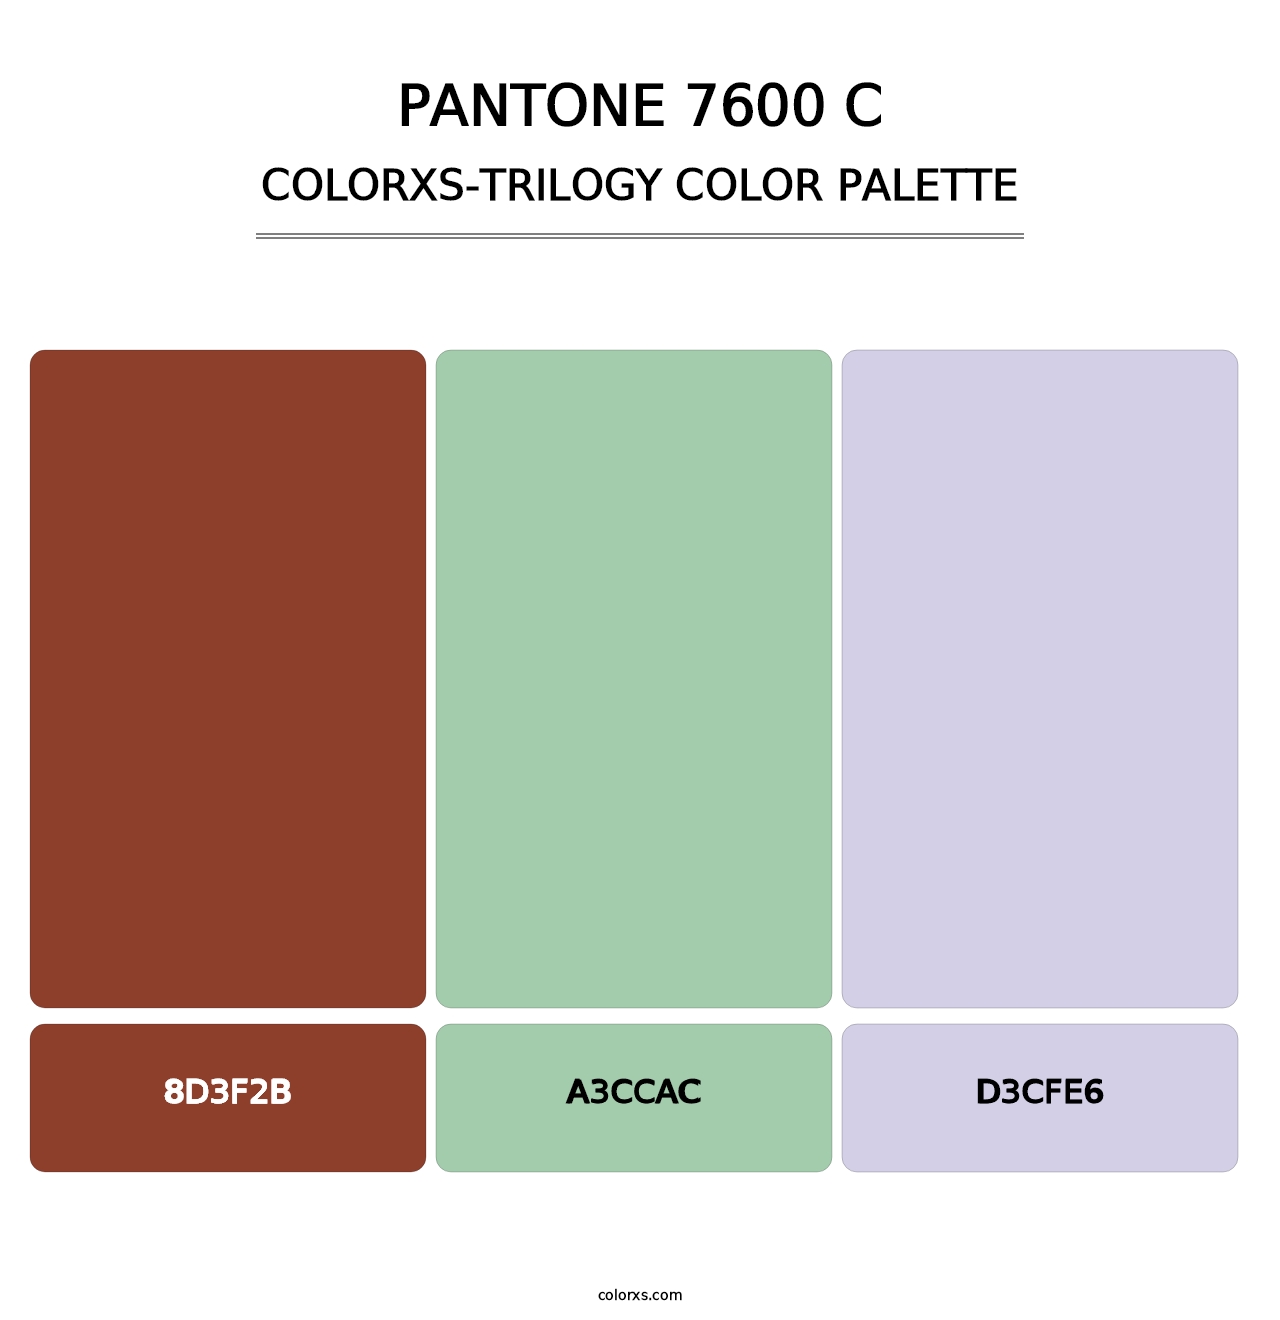 PANTONE 7600 C - Colorxs Trilogy Palette